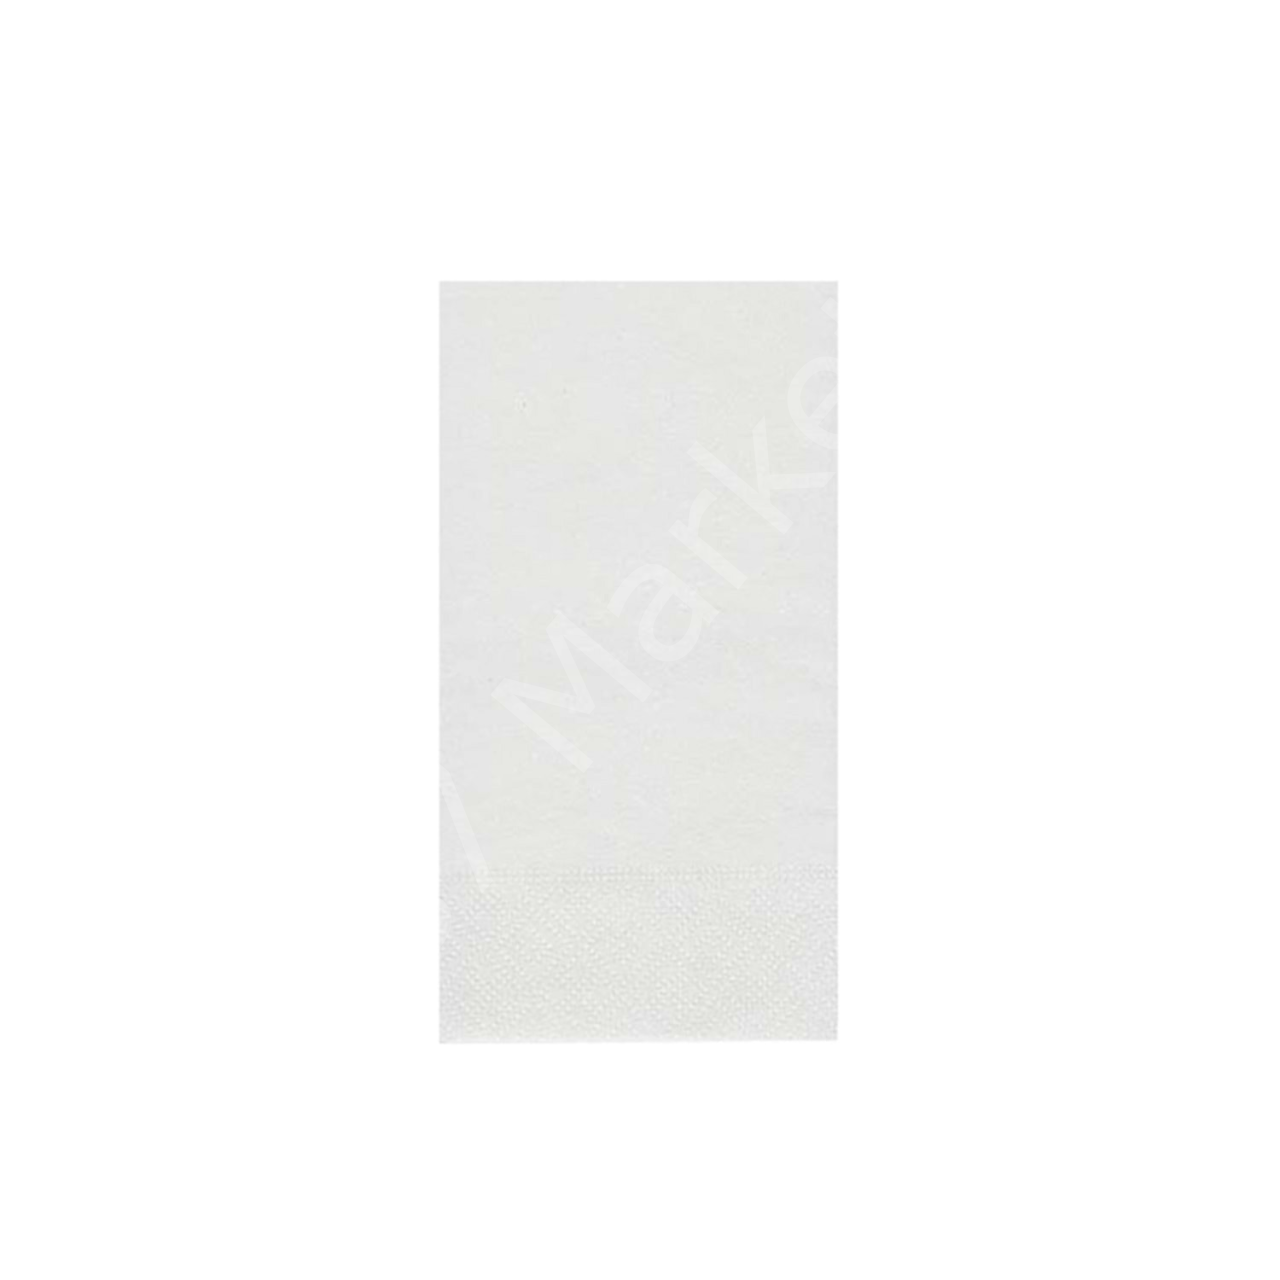 Beyaz Lüks Peçete 24x24 Cm 1/8 Garson Katlama (2400'lü Koli)